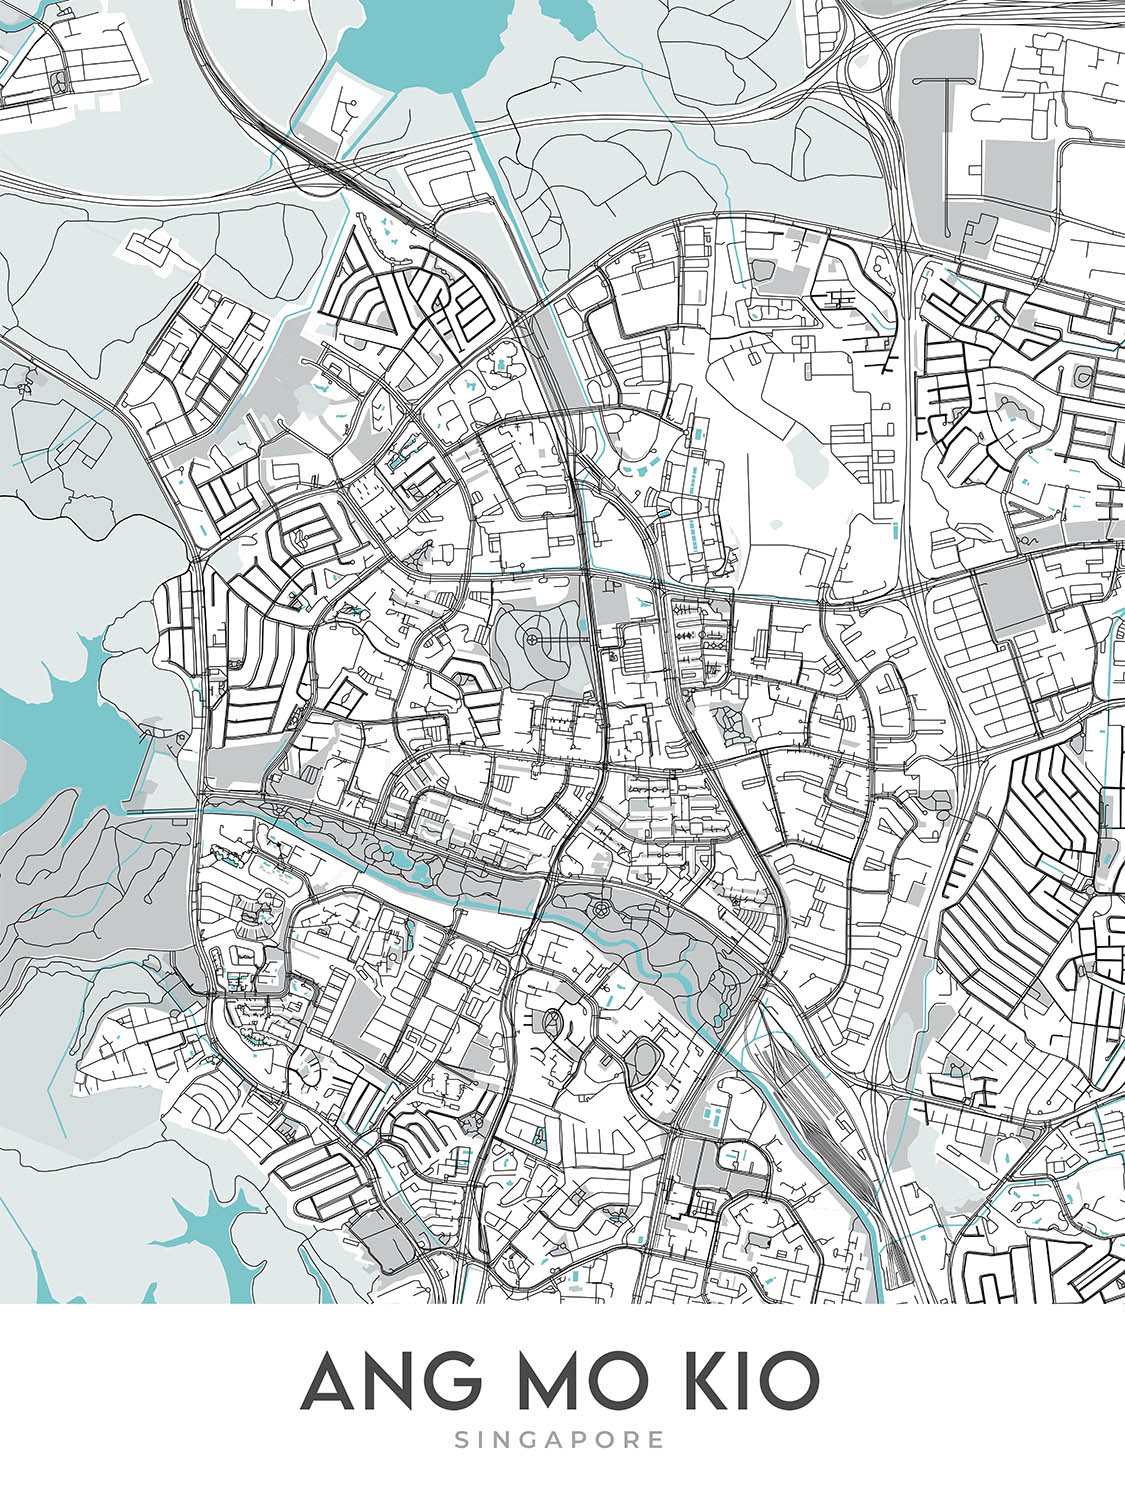 Mapa moderno de la ciudad de Ang Mo Kio, Singapur: Parque Bishan-Ang Mo Kio, embalse Lower Peirce, AMK Hub, Yio Chu Kang Rd, Ang Mo Kio Ave 3